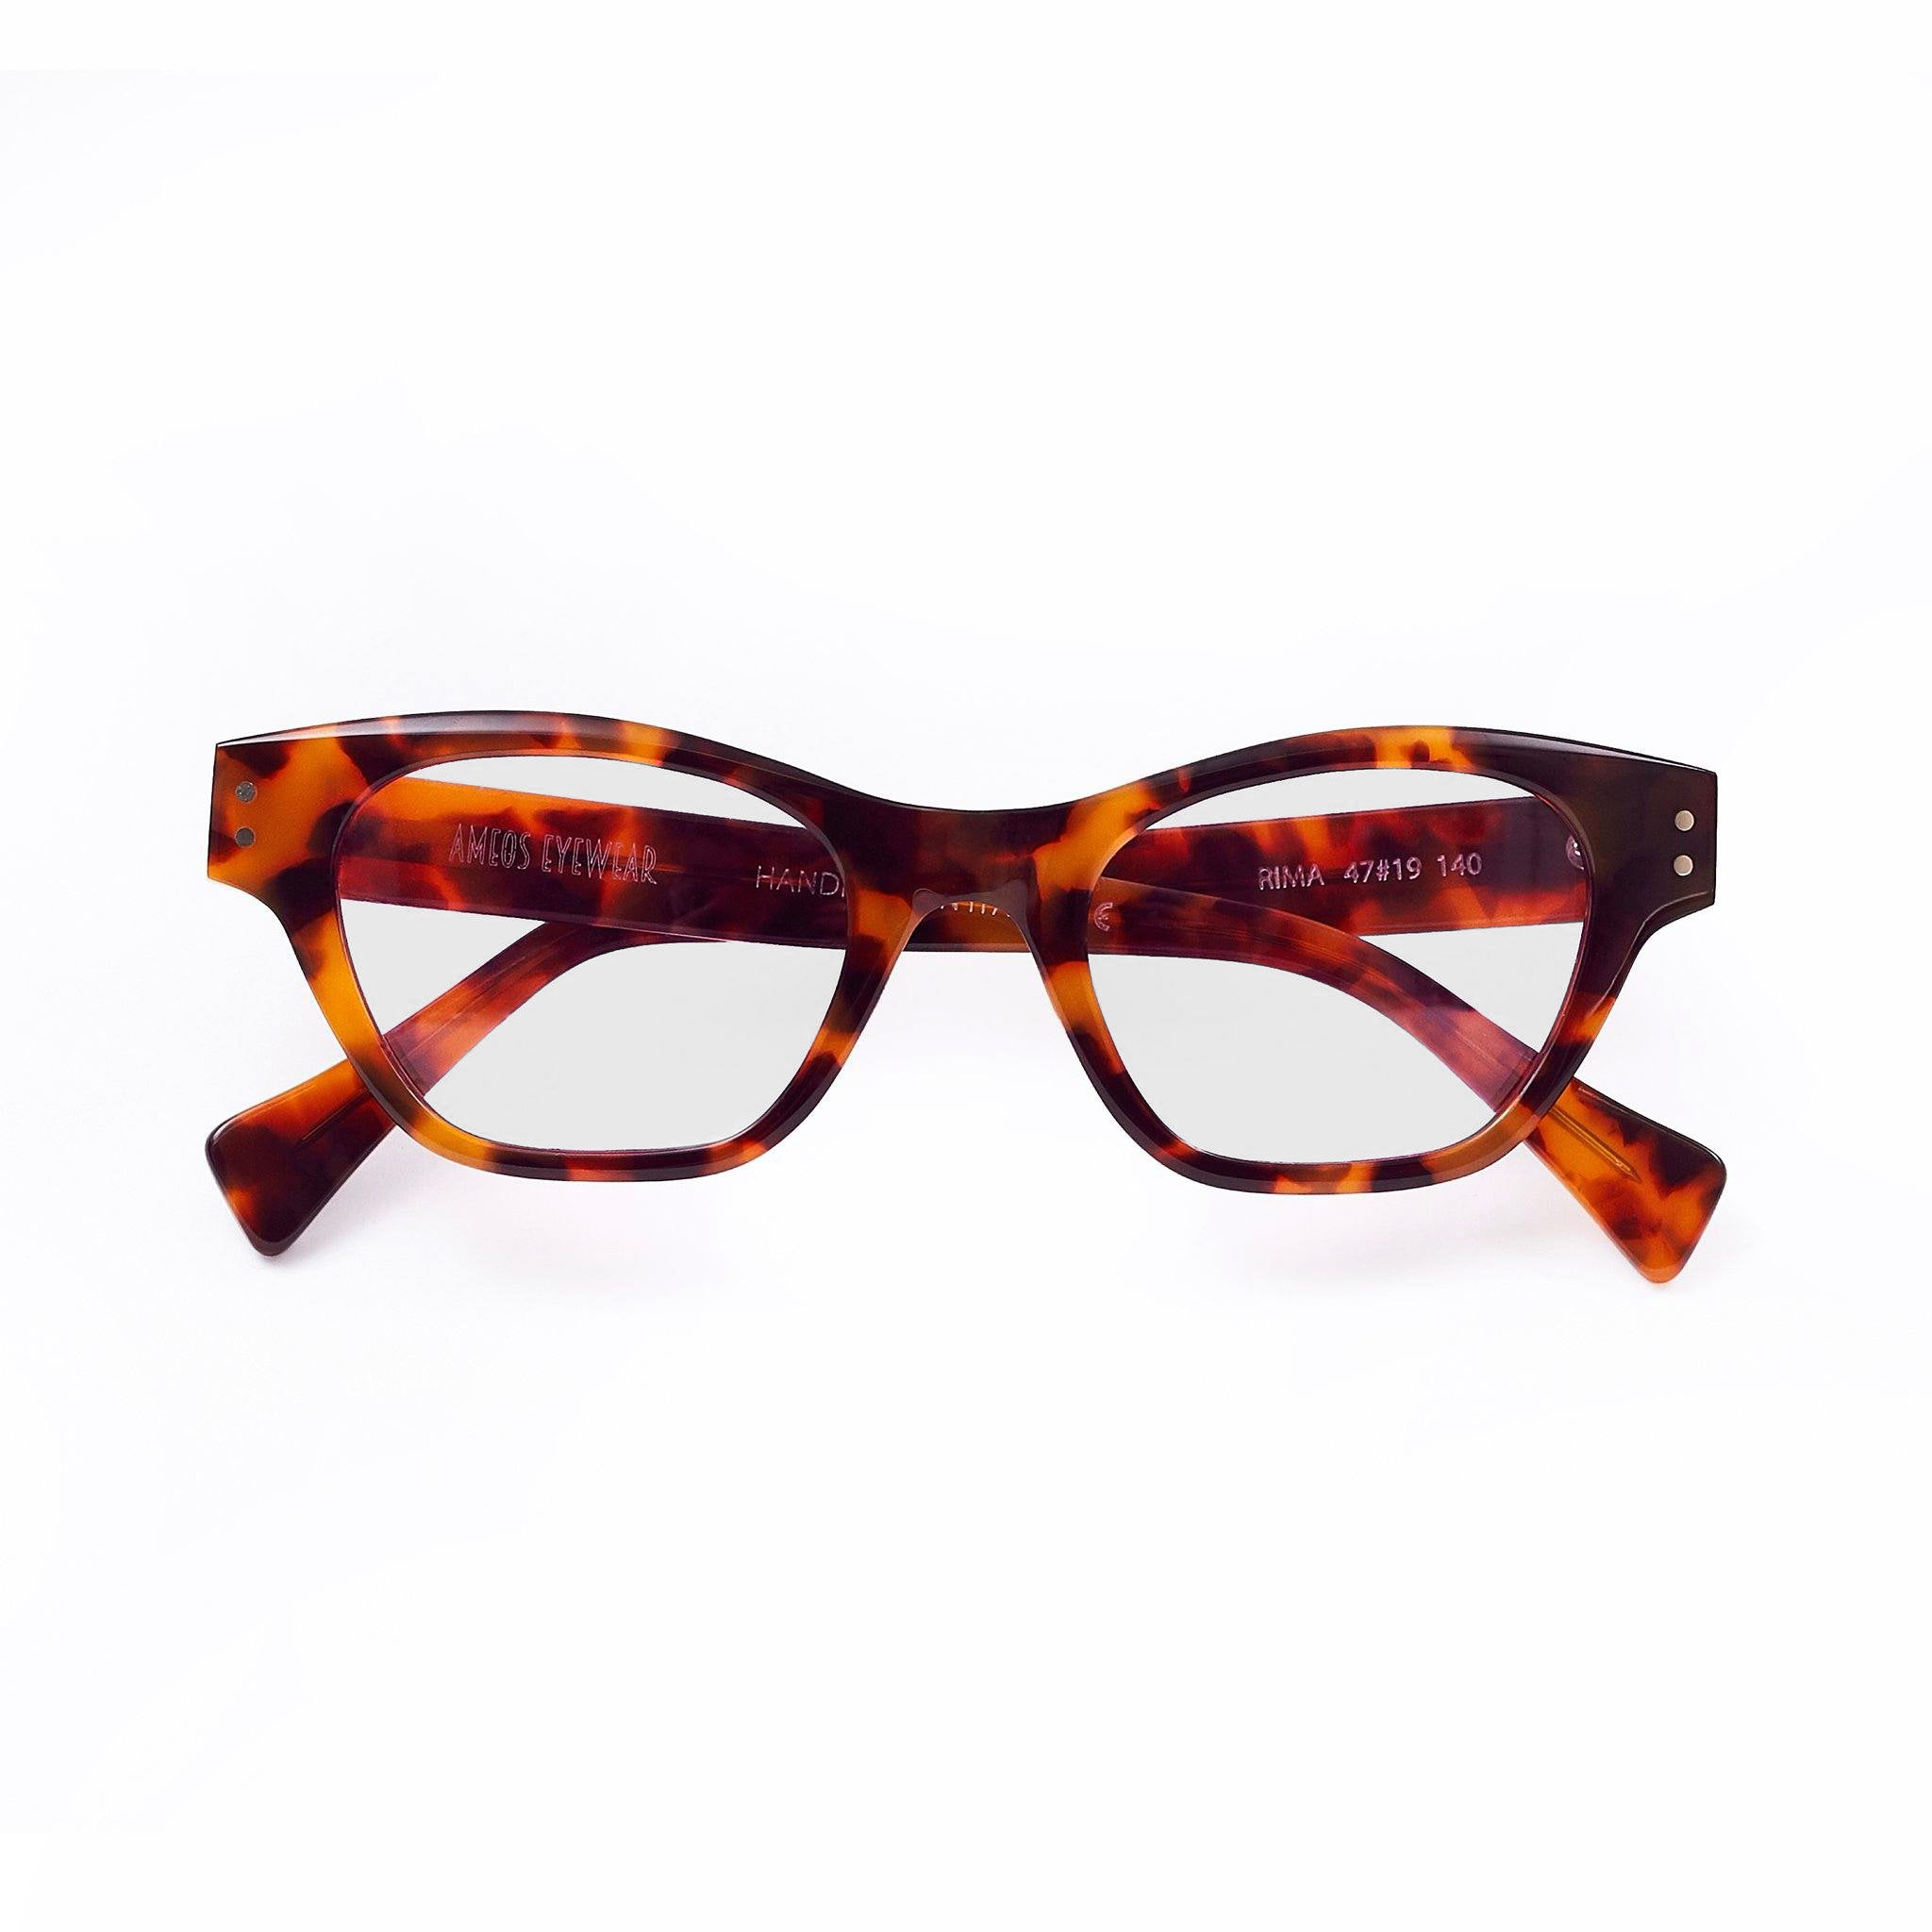 Ameos eyewear rima optical glasses with tortoise frames, unisex.